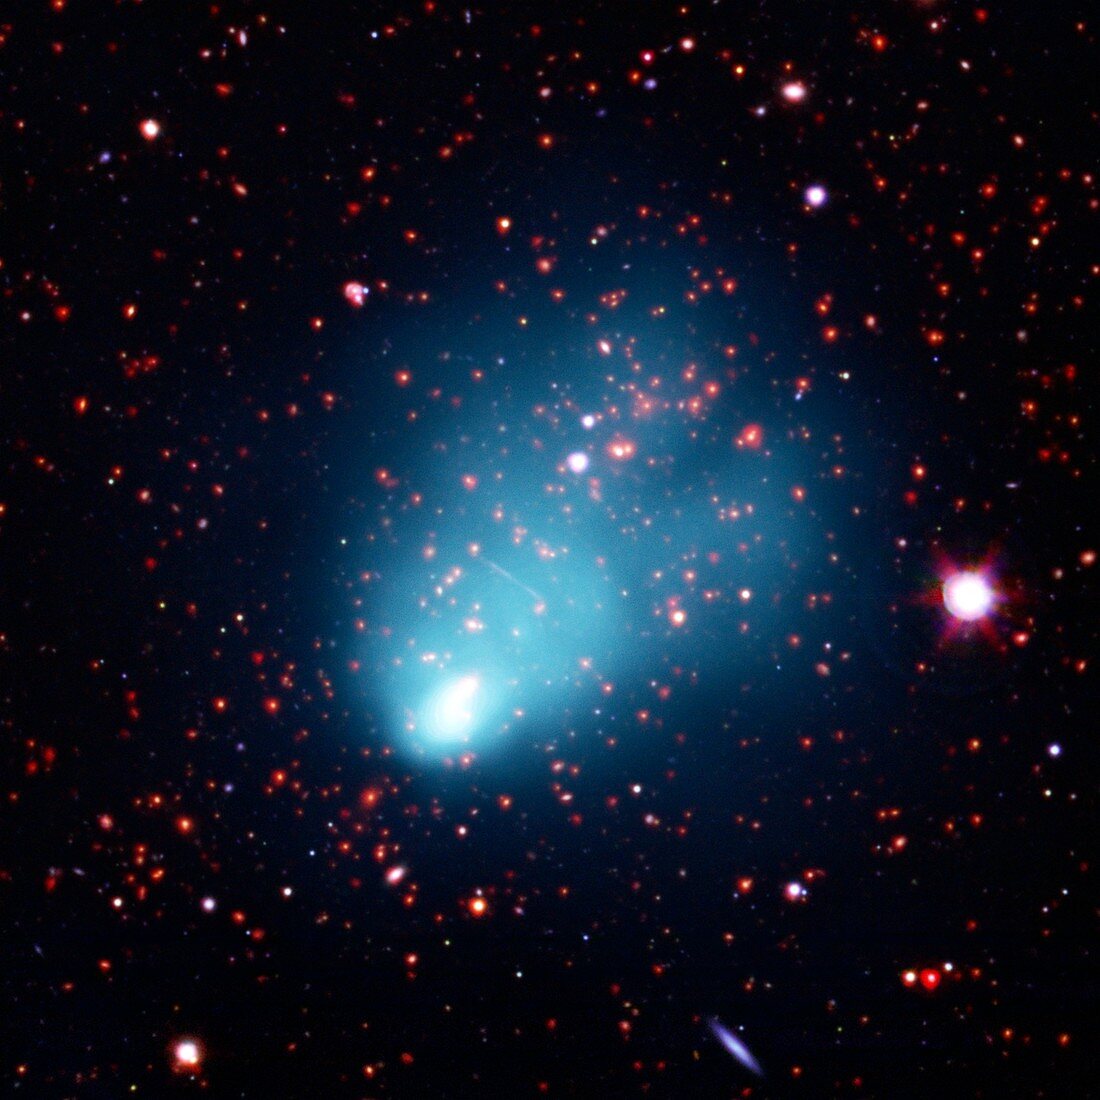 El Gordo galaxy cluster, composite image